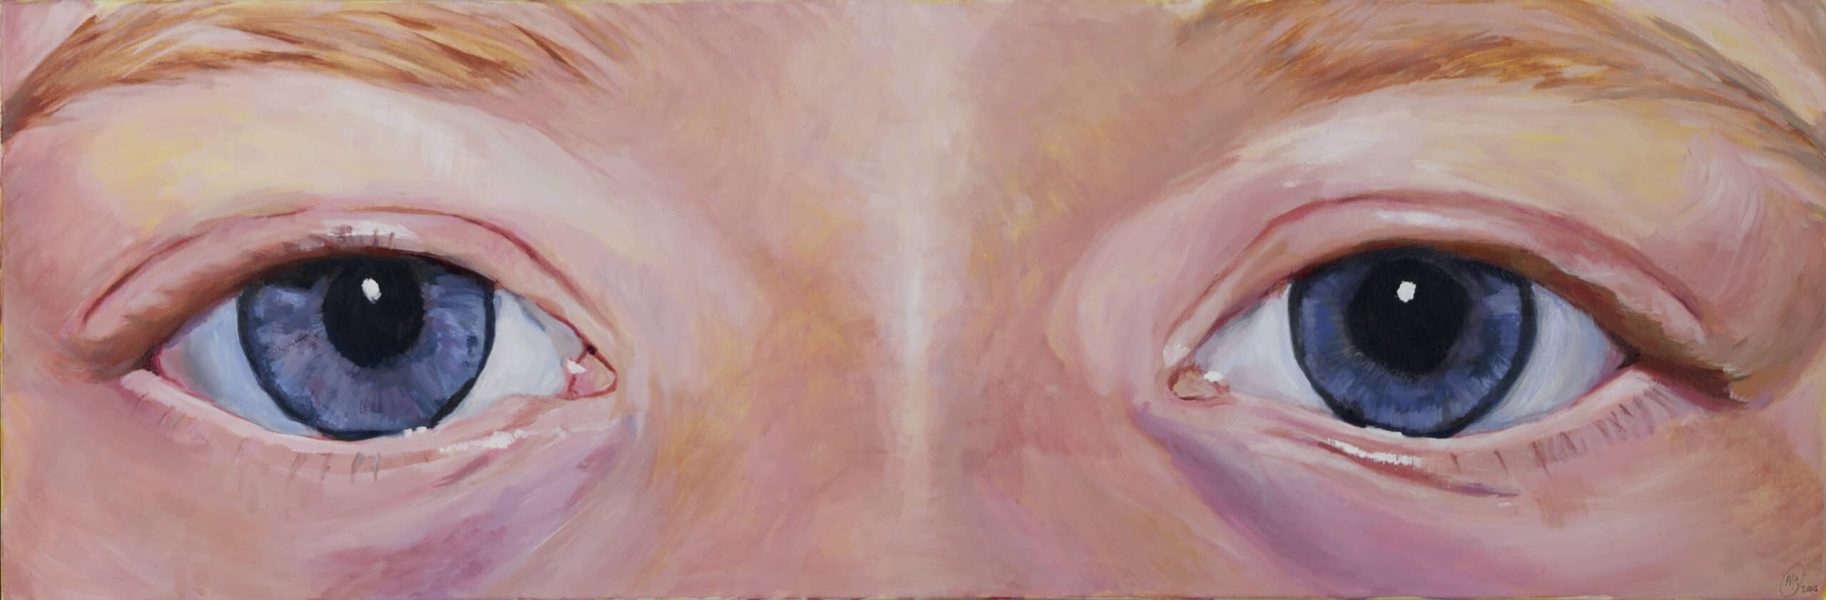 De blik van een meisje, 2021, 40cmX120cm, acrylverf op canvas